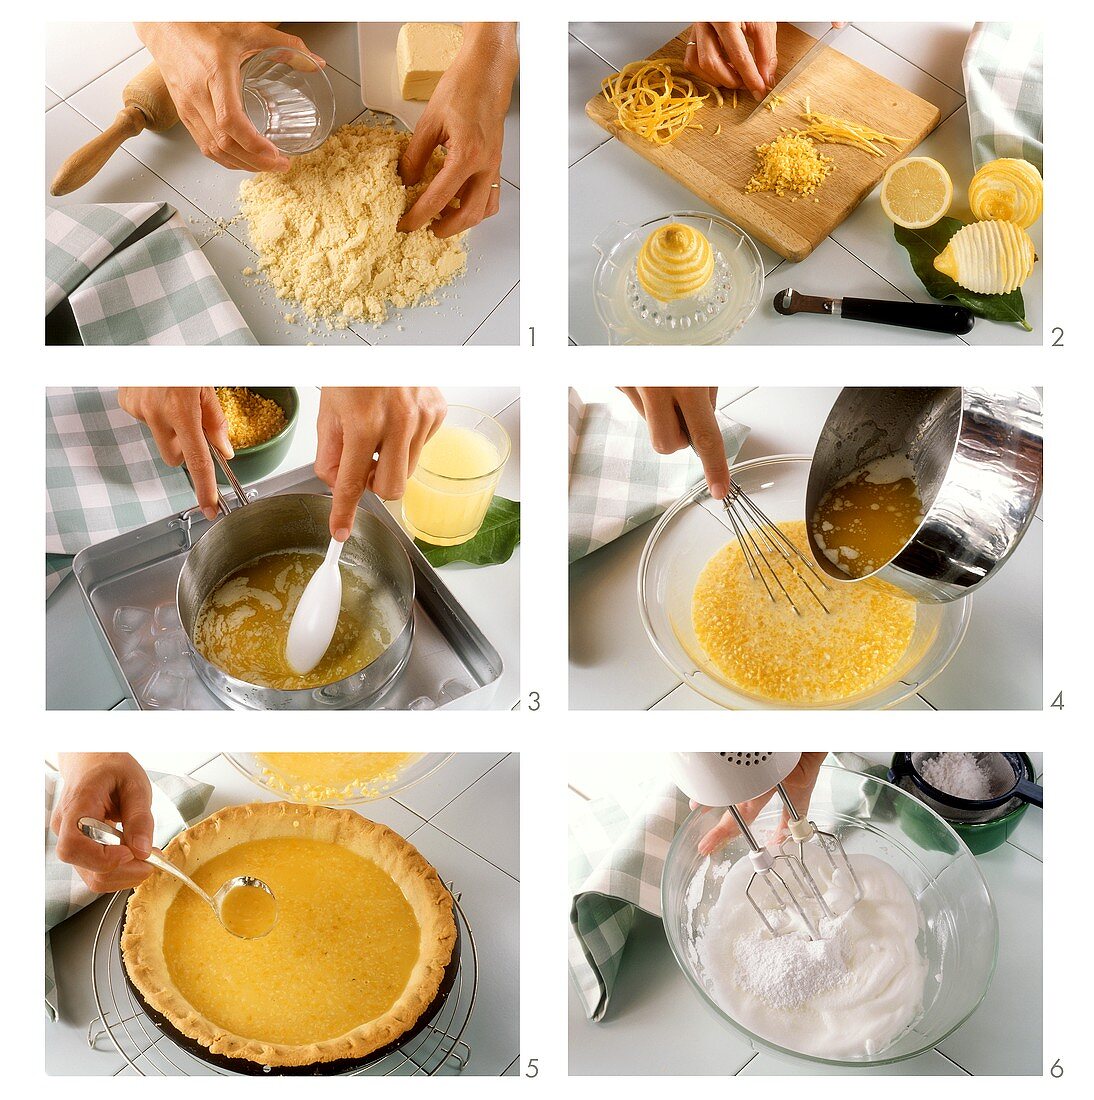 Making lemon meringue pie